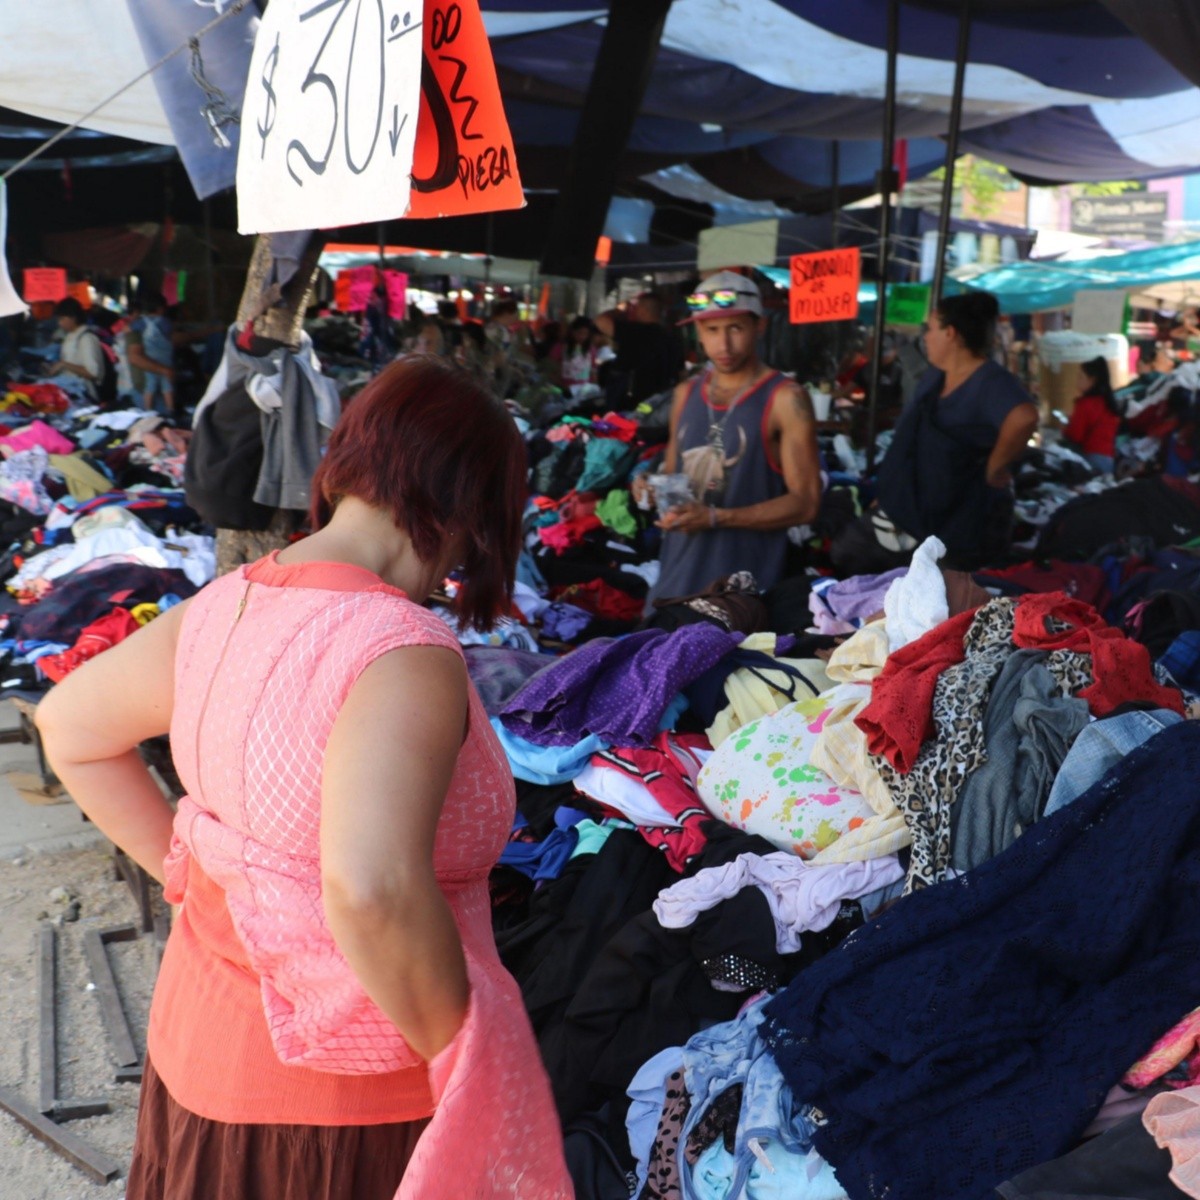 Dónde comprar ropa para vender en Guadalajara? 11 opciones